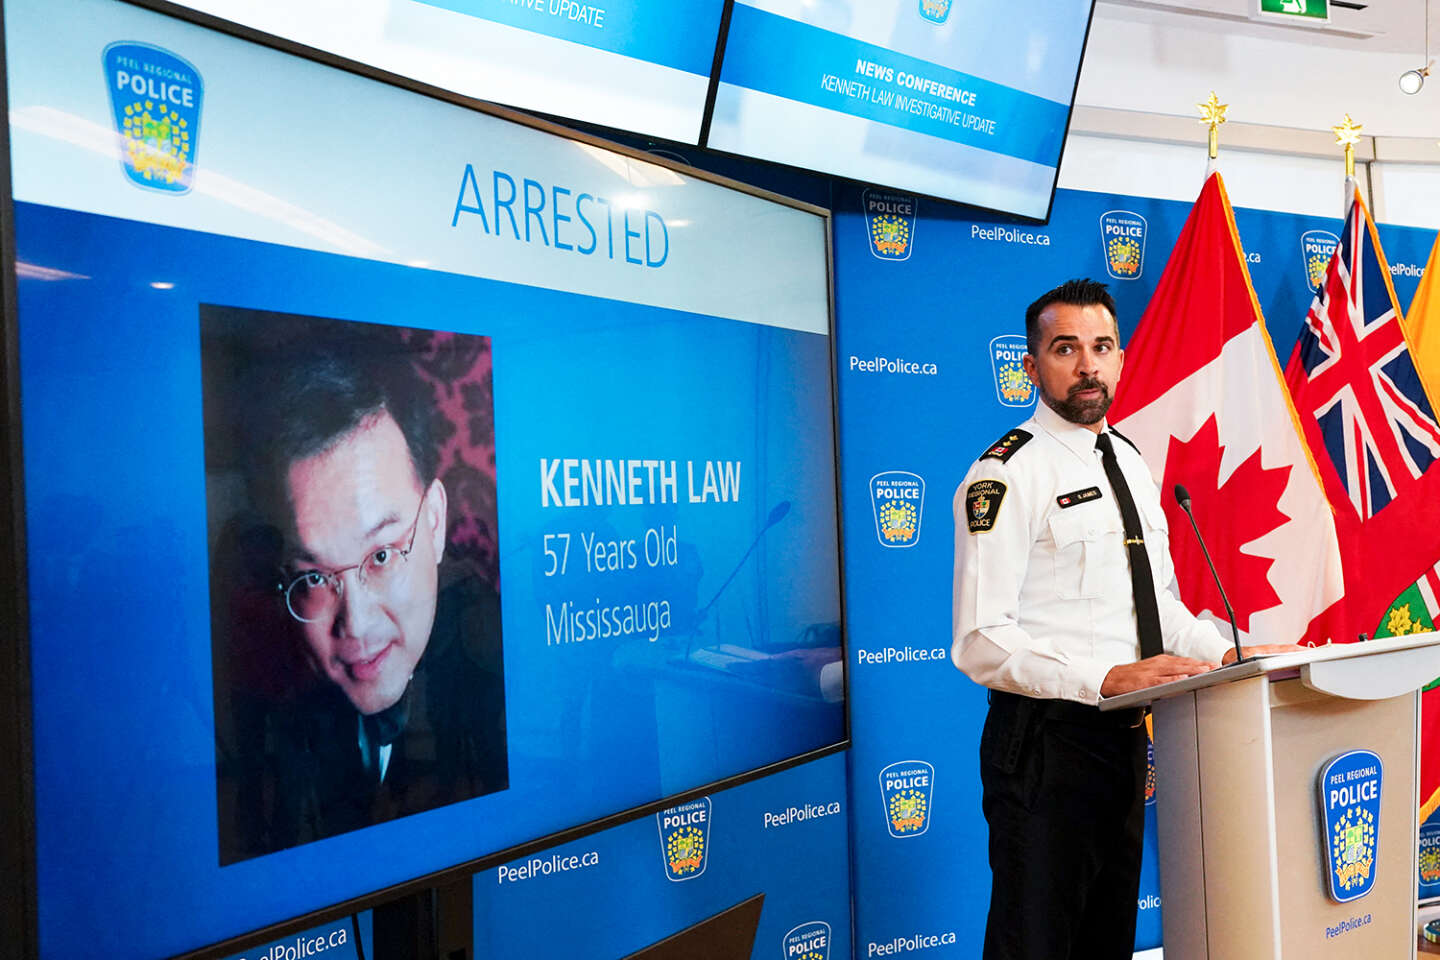 Au Canada, les « kits de suicide » de Kenneth Law comme des lettres à la poste